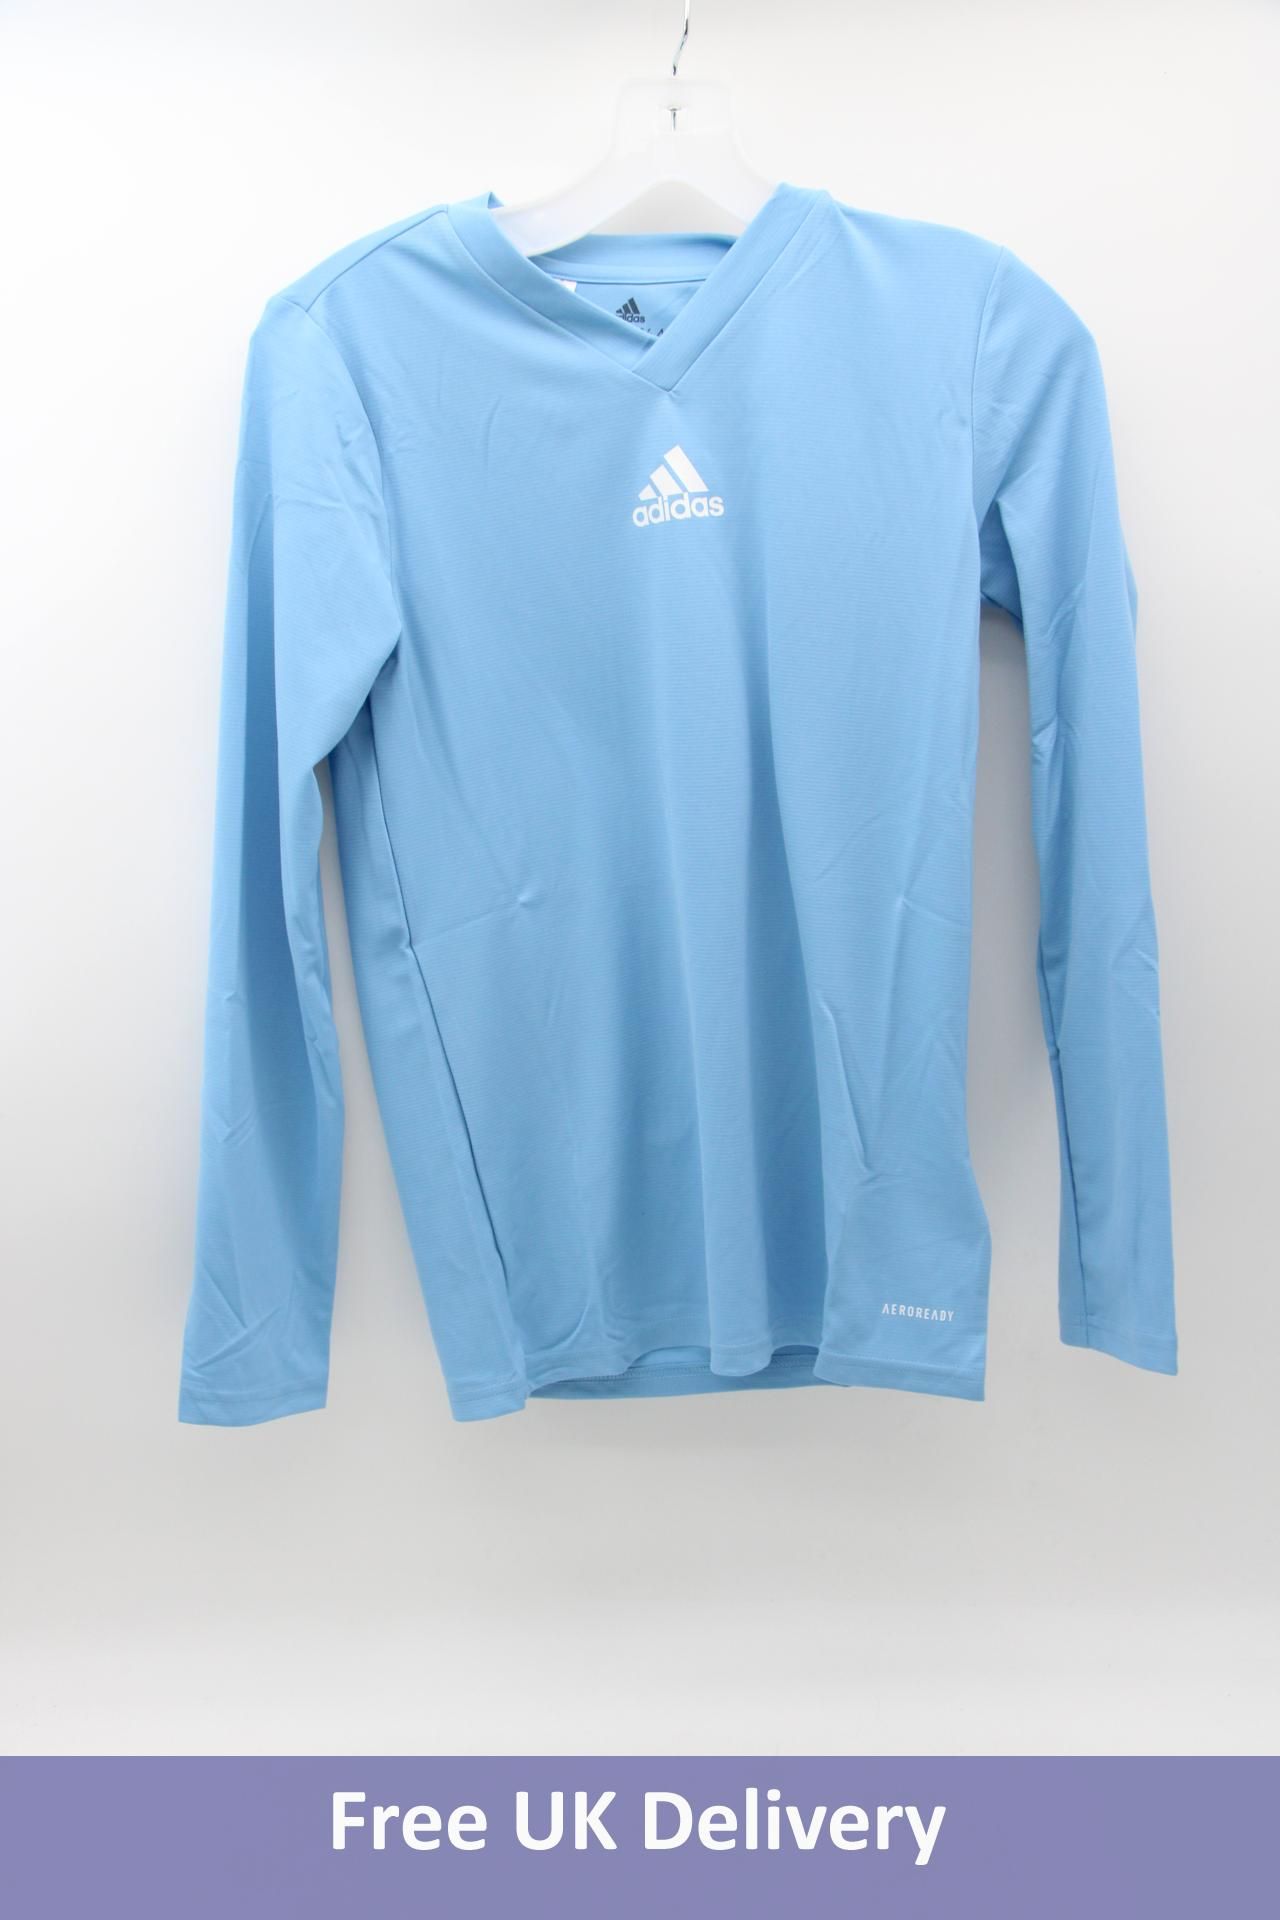 Two Adidas Base Long Sleeve T-Shirts, Blue, UK Size 13-14 Years